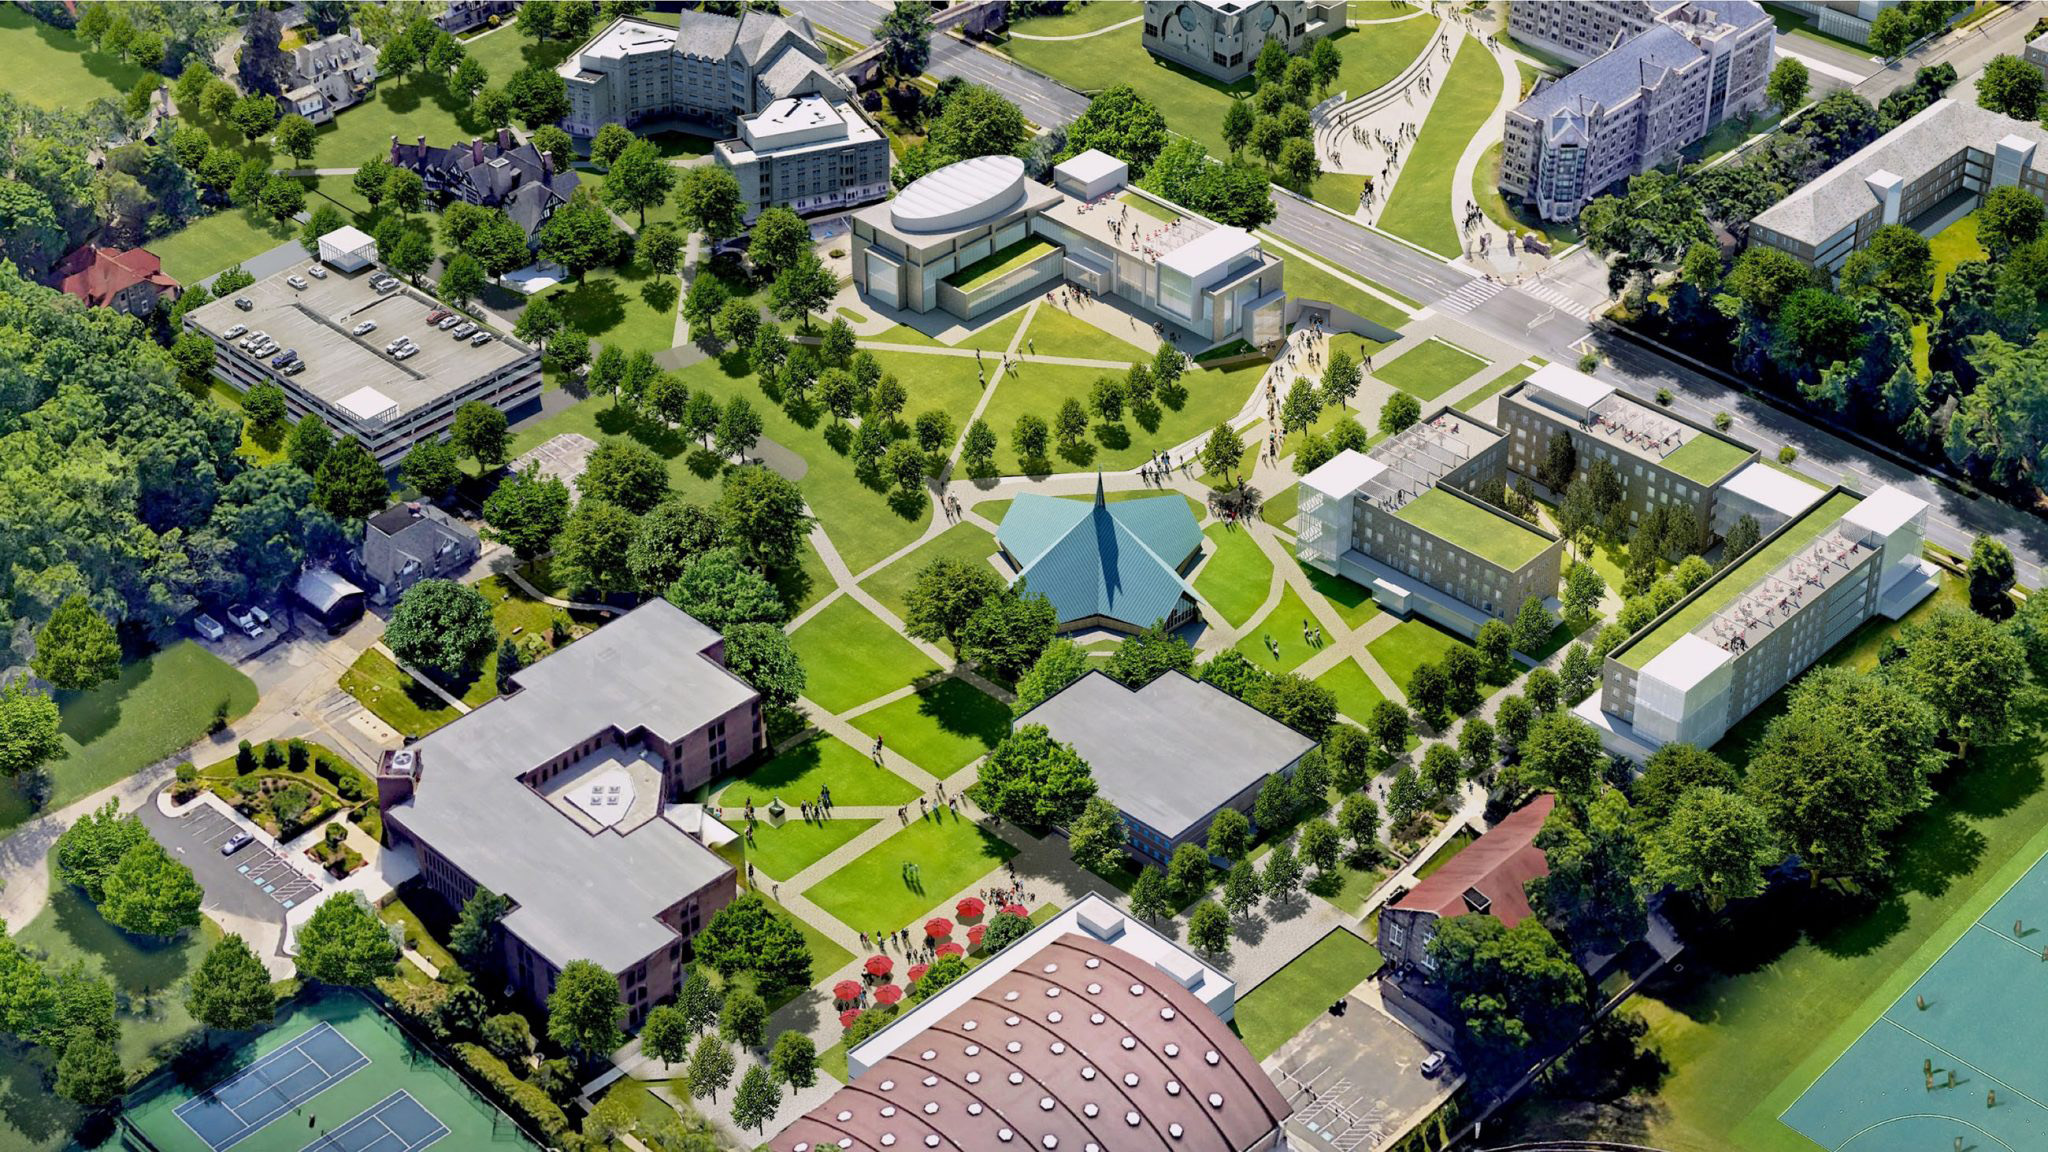 Saint Joseph's University's Maguire Campus future state